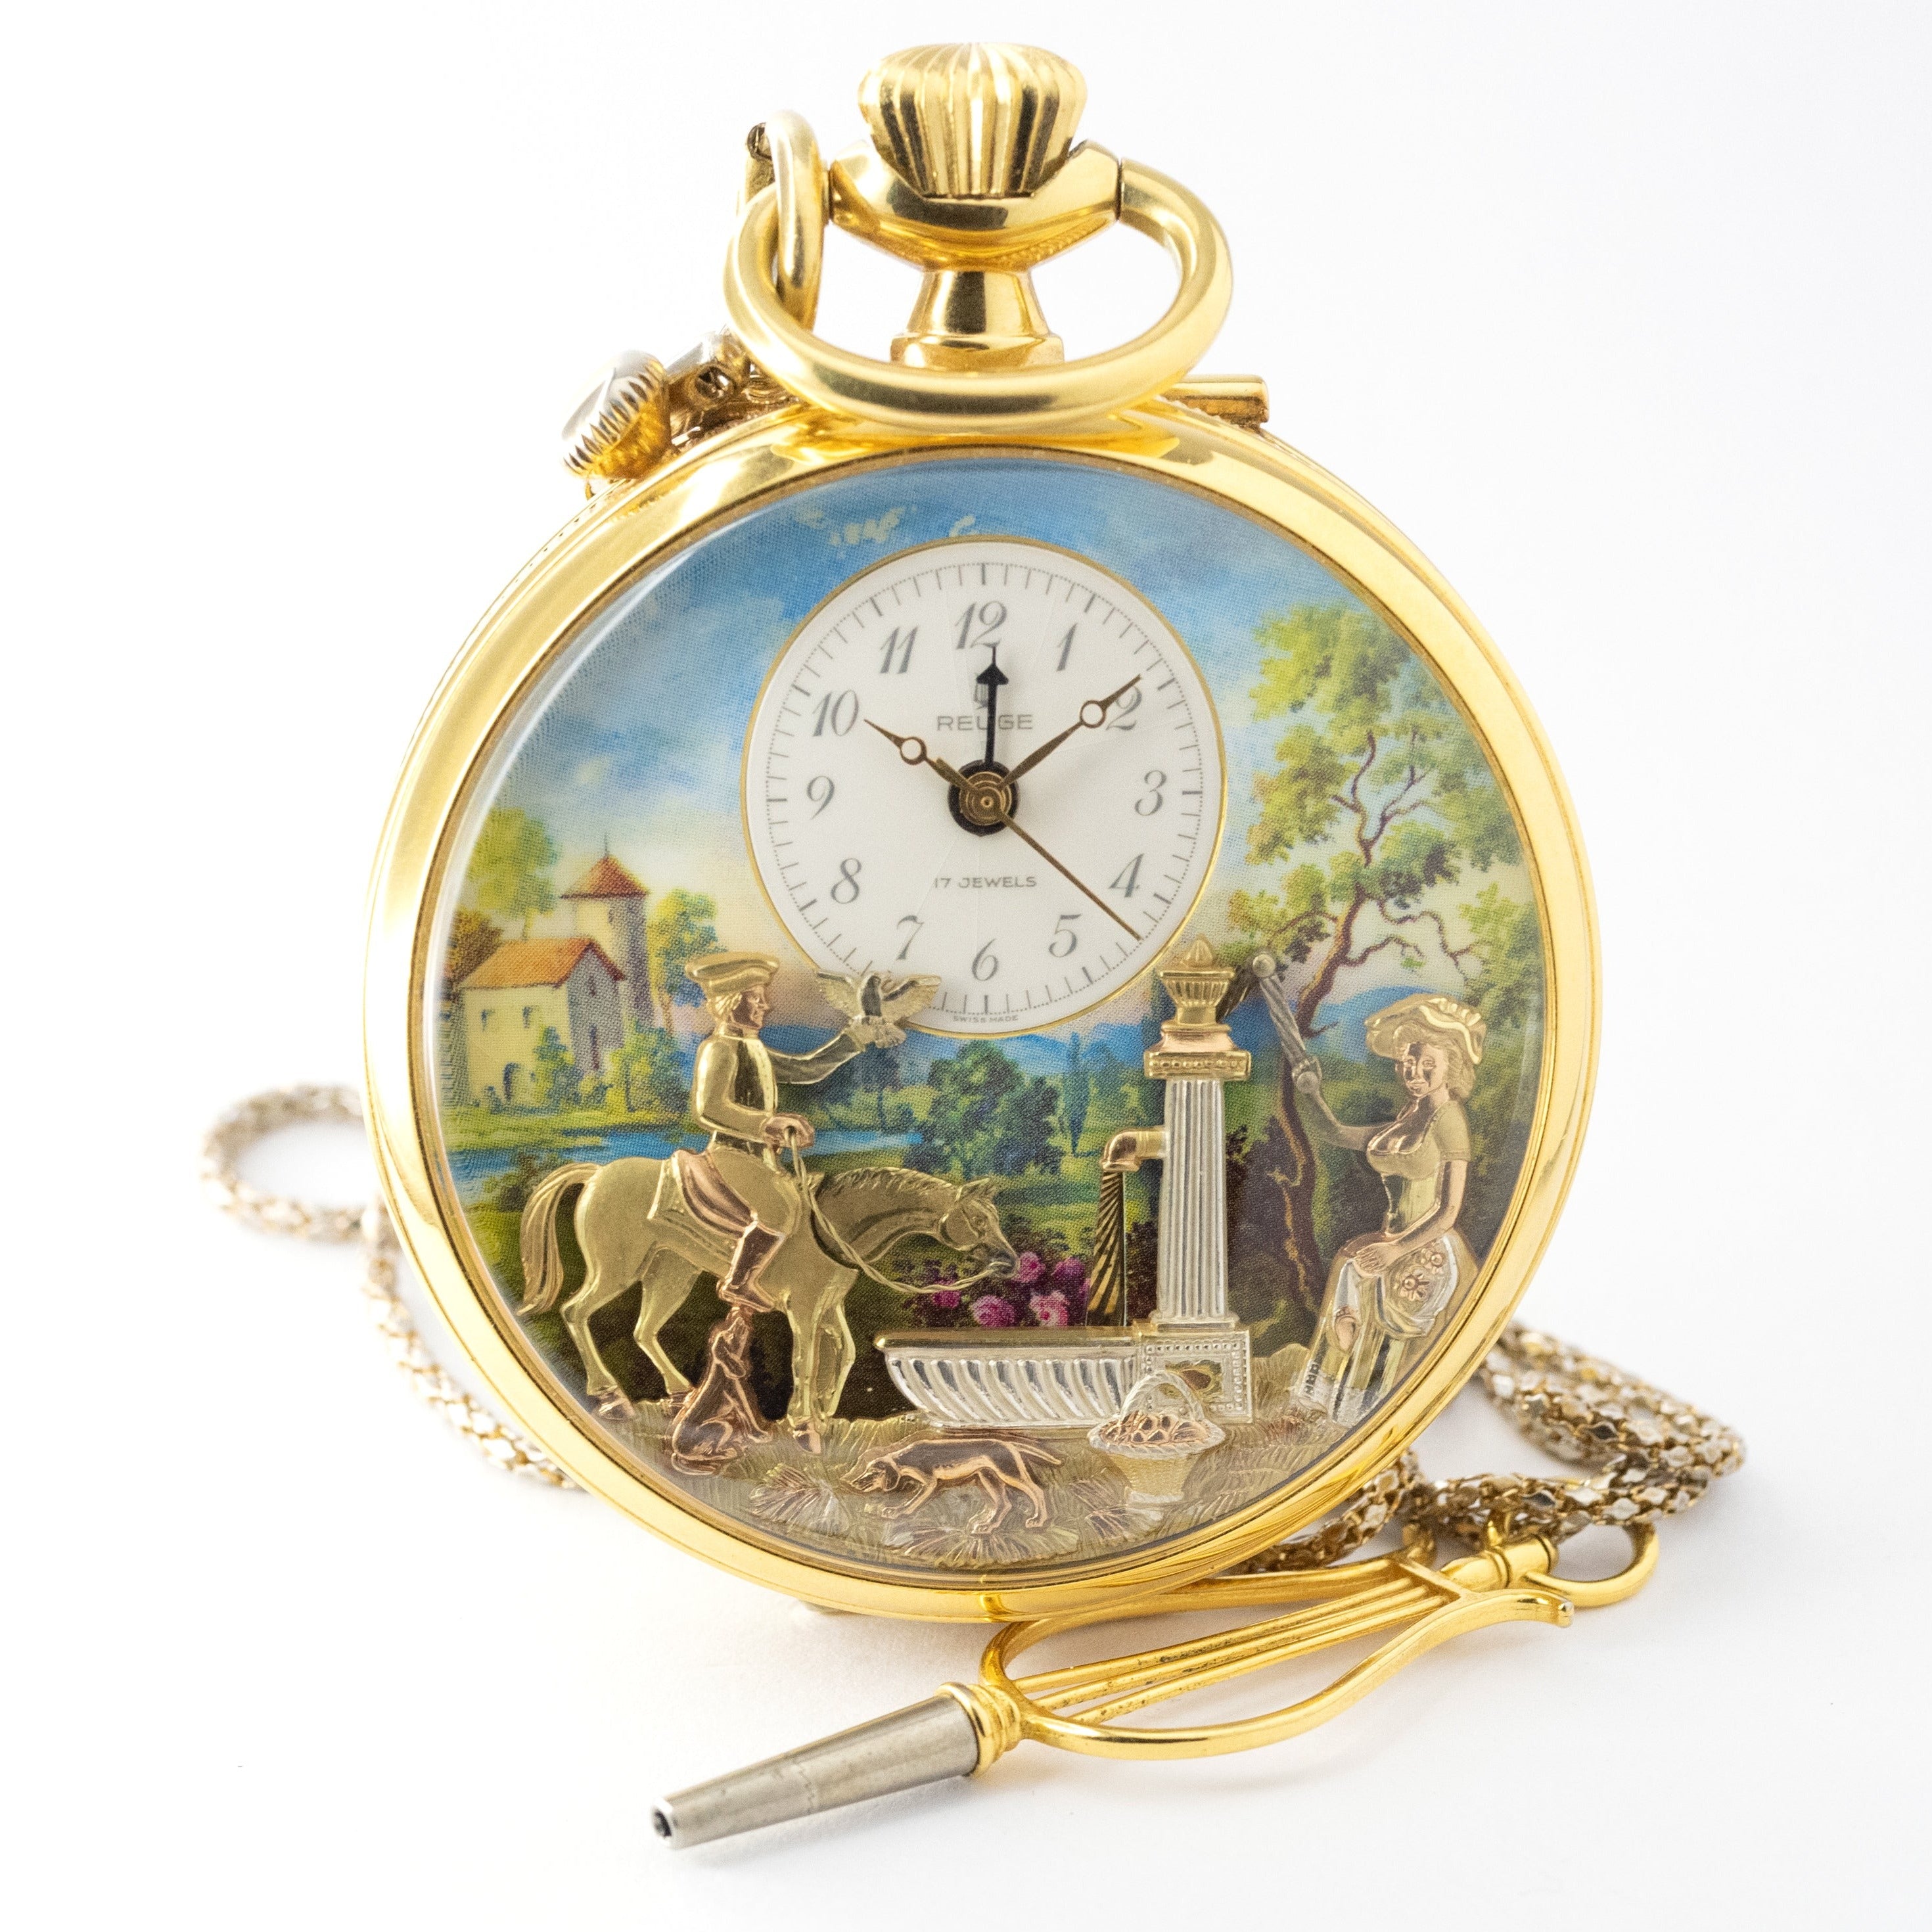 166,000⇒138,000円スイス製 リュージュ社 懐中時計 オルゴール付き - 時計